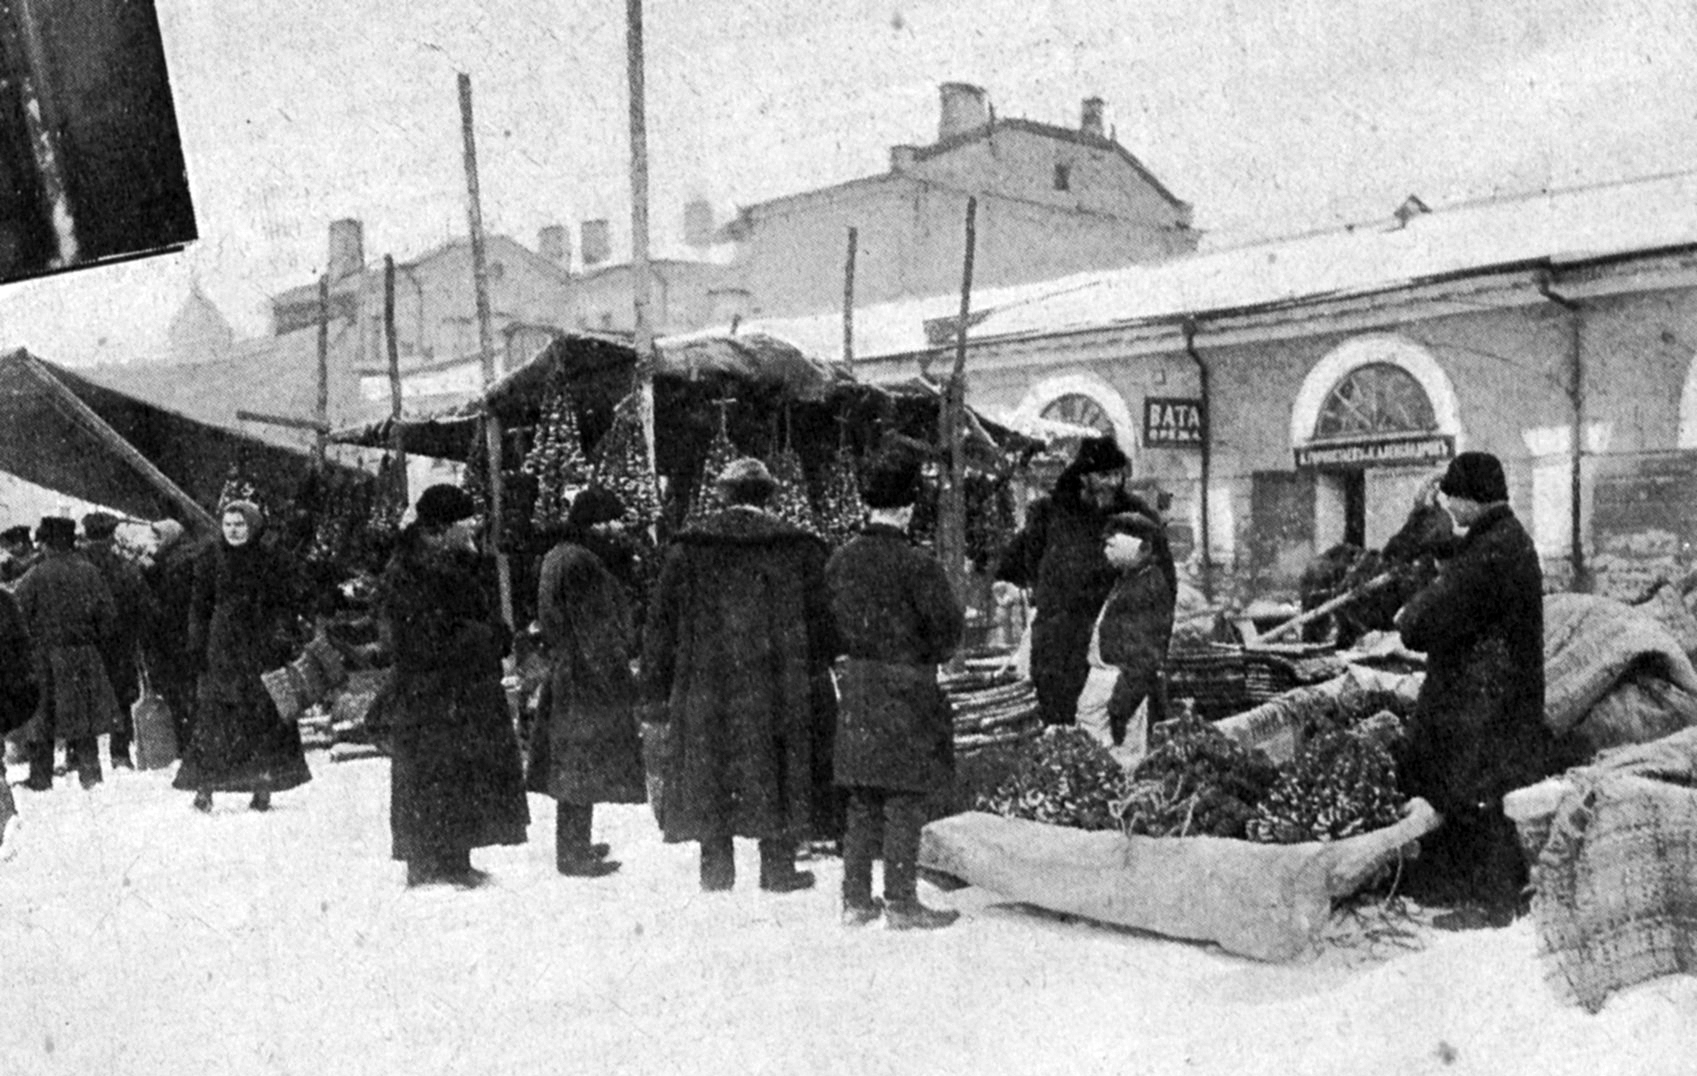 Фото Грибного рынка, по некоторым данным, сделанное в 1908 году. Фото: Pastvu.com